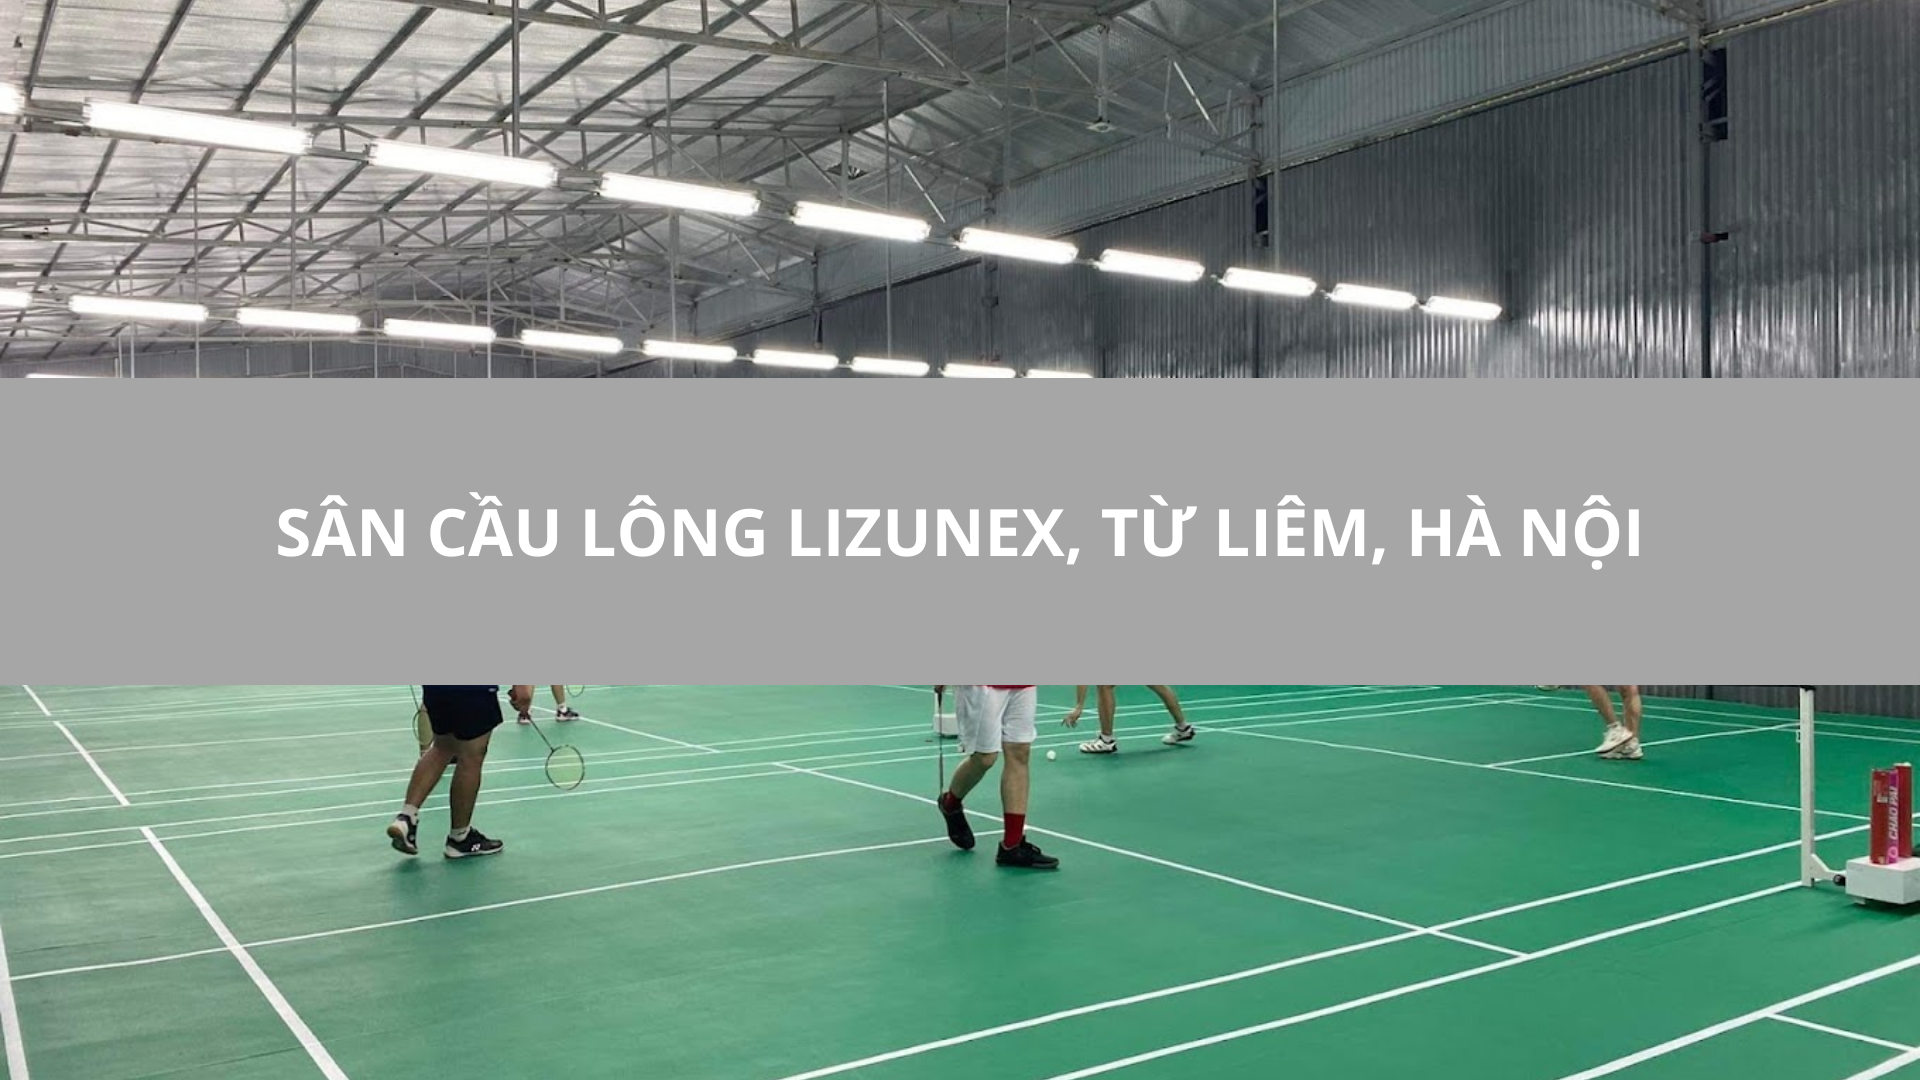 Sân cầu lông Lizunex, Từ Liêm, Hà Nội